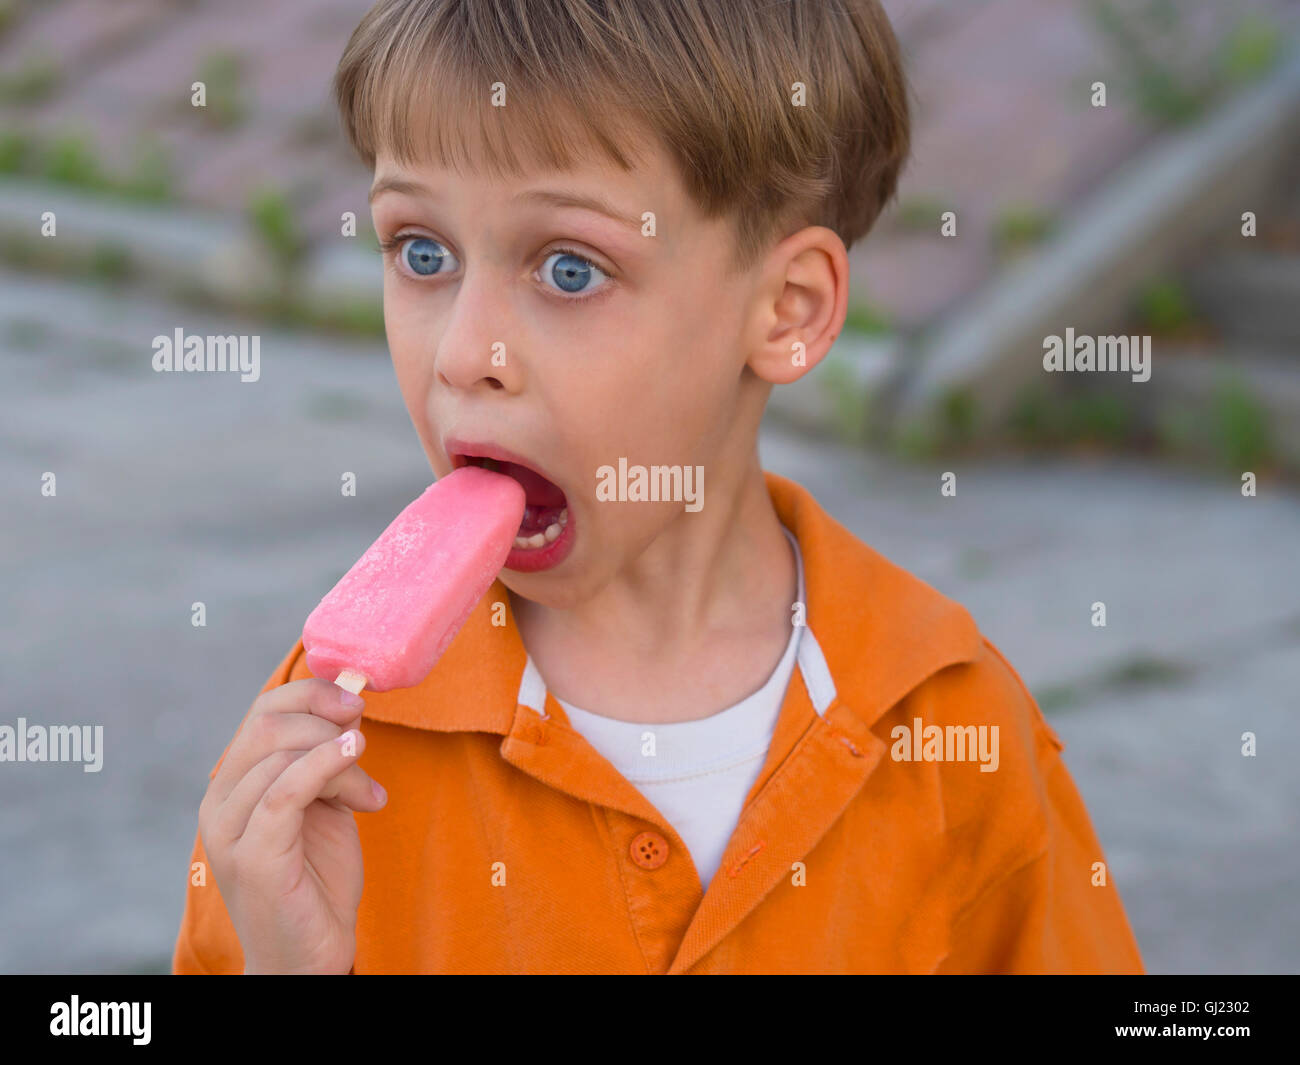 boy with ice cream Stock Photo